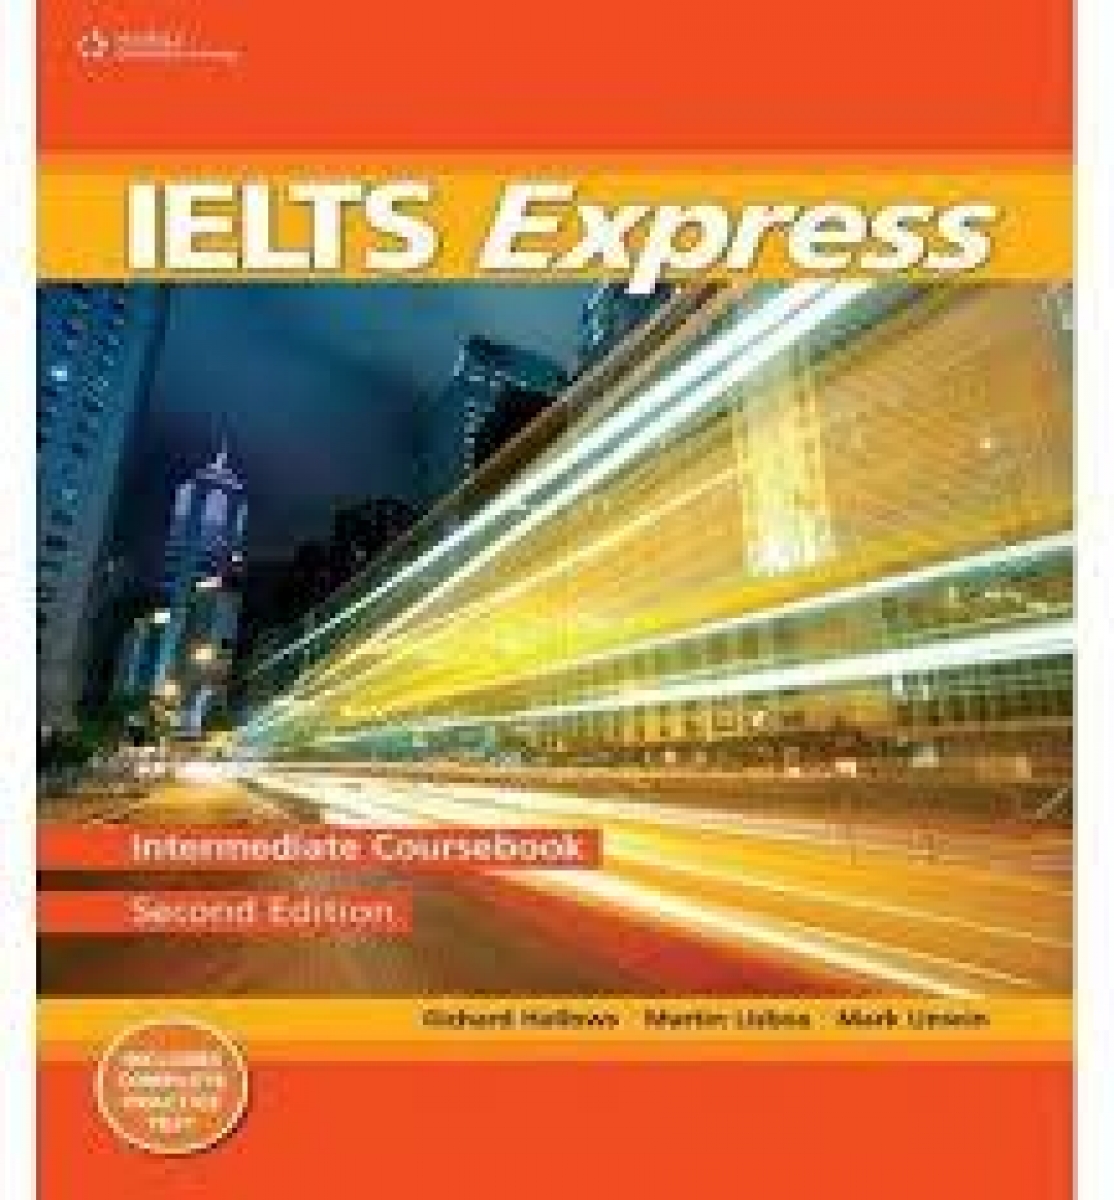 Martin Lisboa, Mark Unwin, Richard Howells IELTS Express Second Edition Intermediate Teacher's Guide 